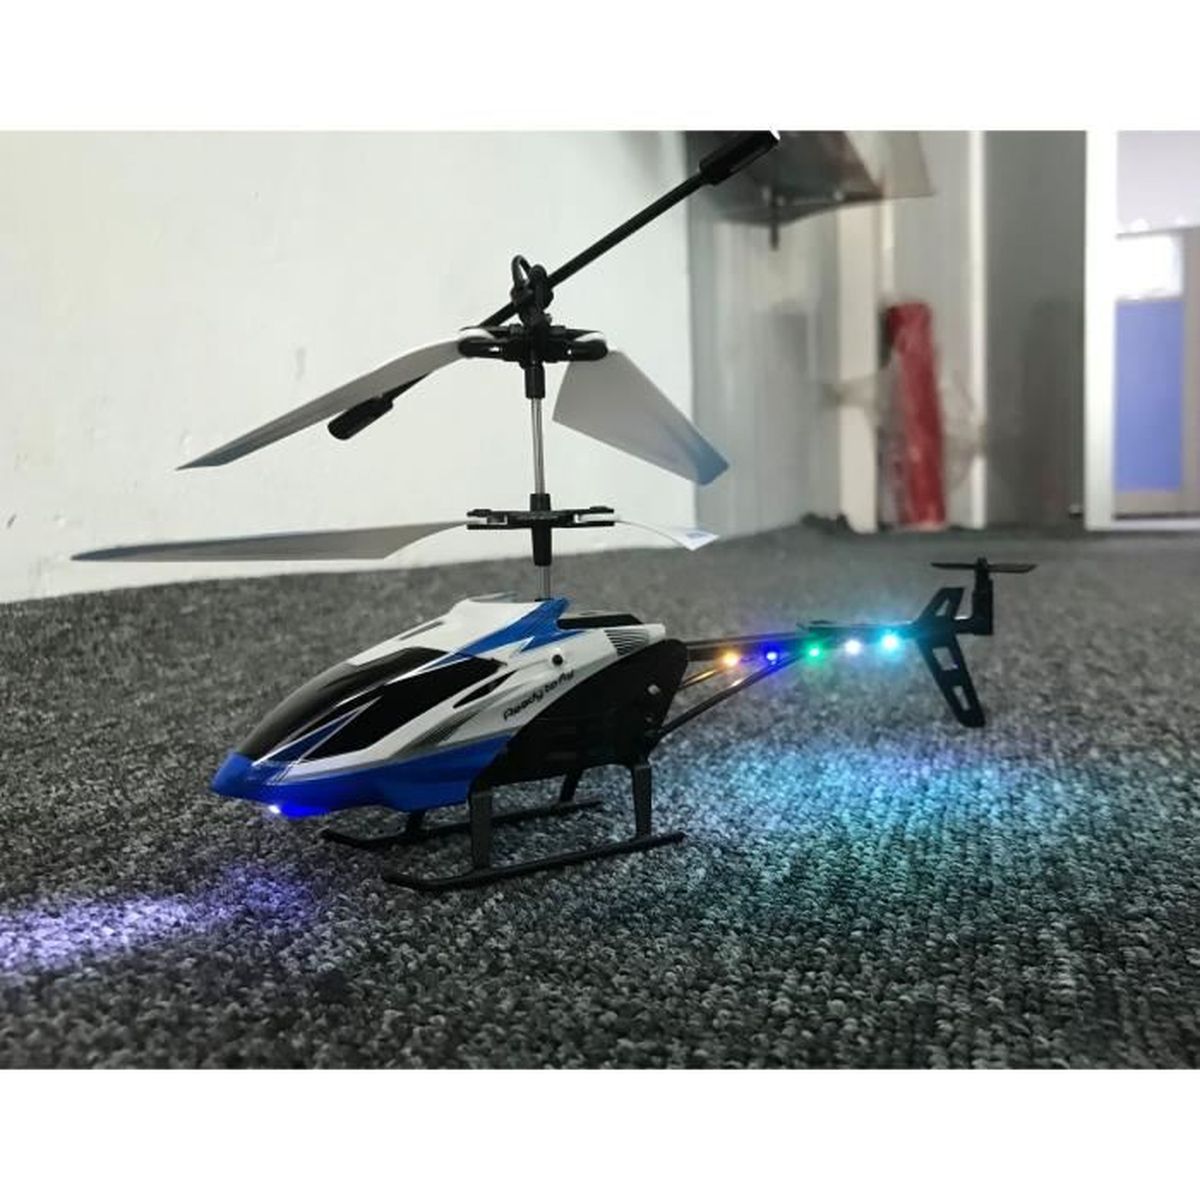 Drone hélicoptère RC à 3,5 canaux avec Gyroscope télécommande Infrarouge à lumière LED pour Enfants et débutants pour Jouer à l'intérieur WZRY Hélicoptère RC hélicoptère 2,4 GHz 